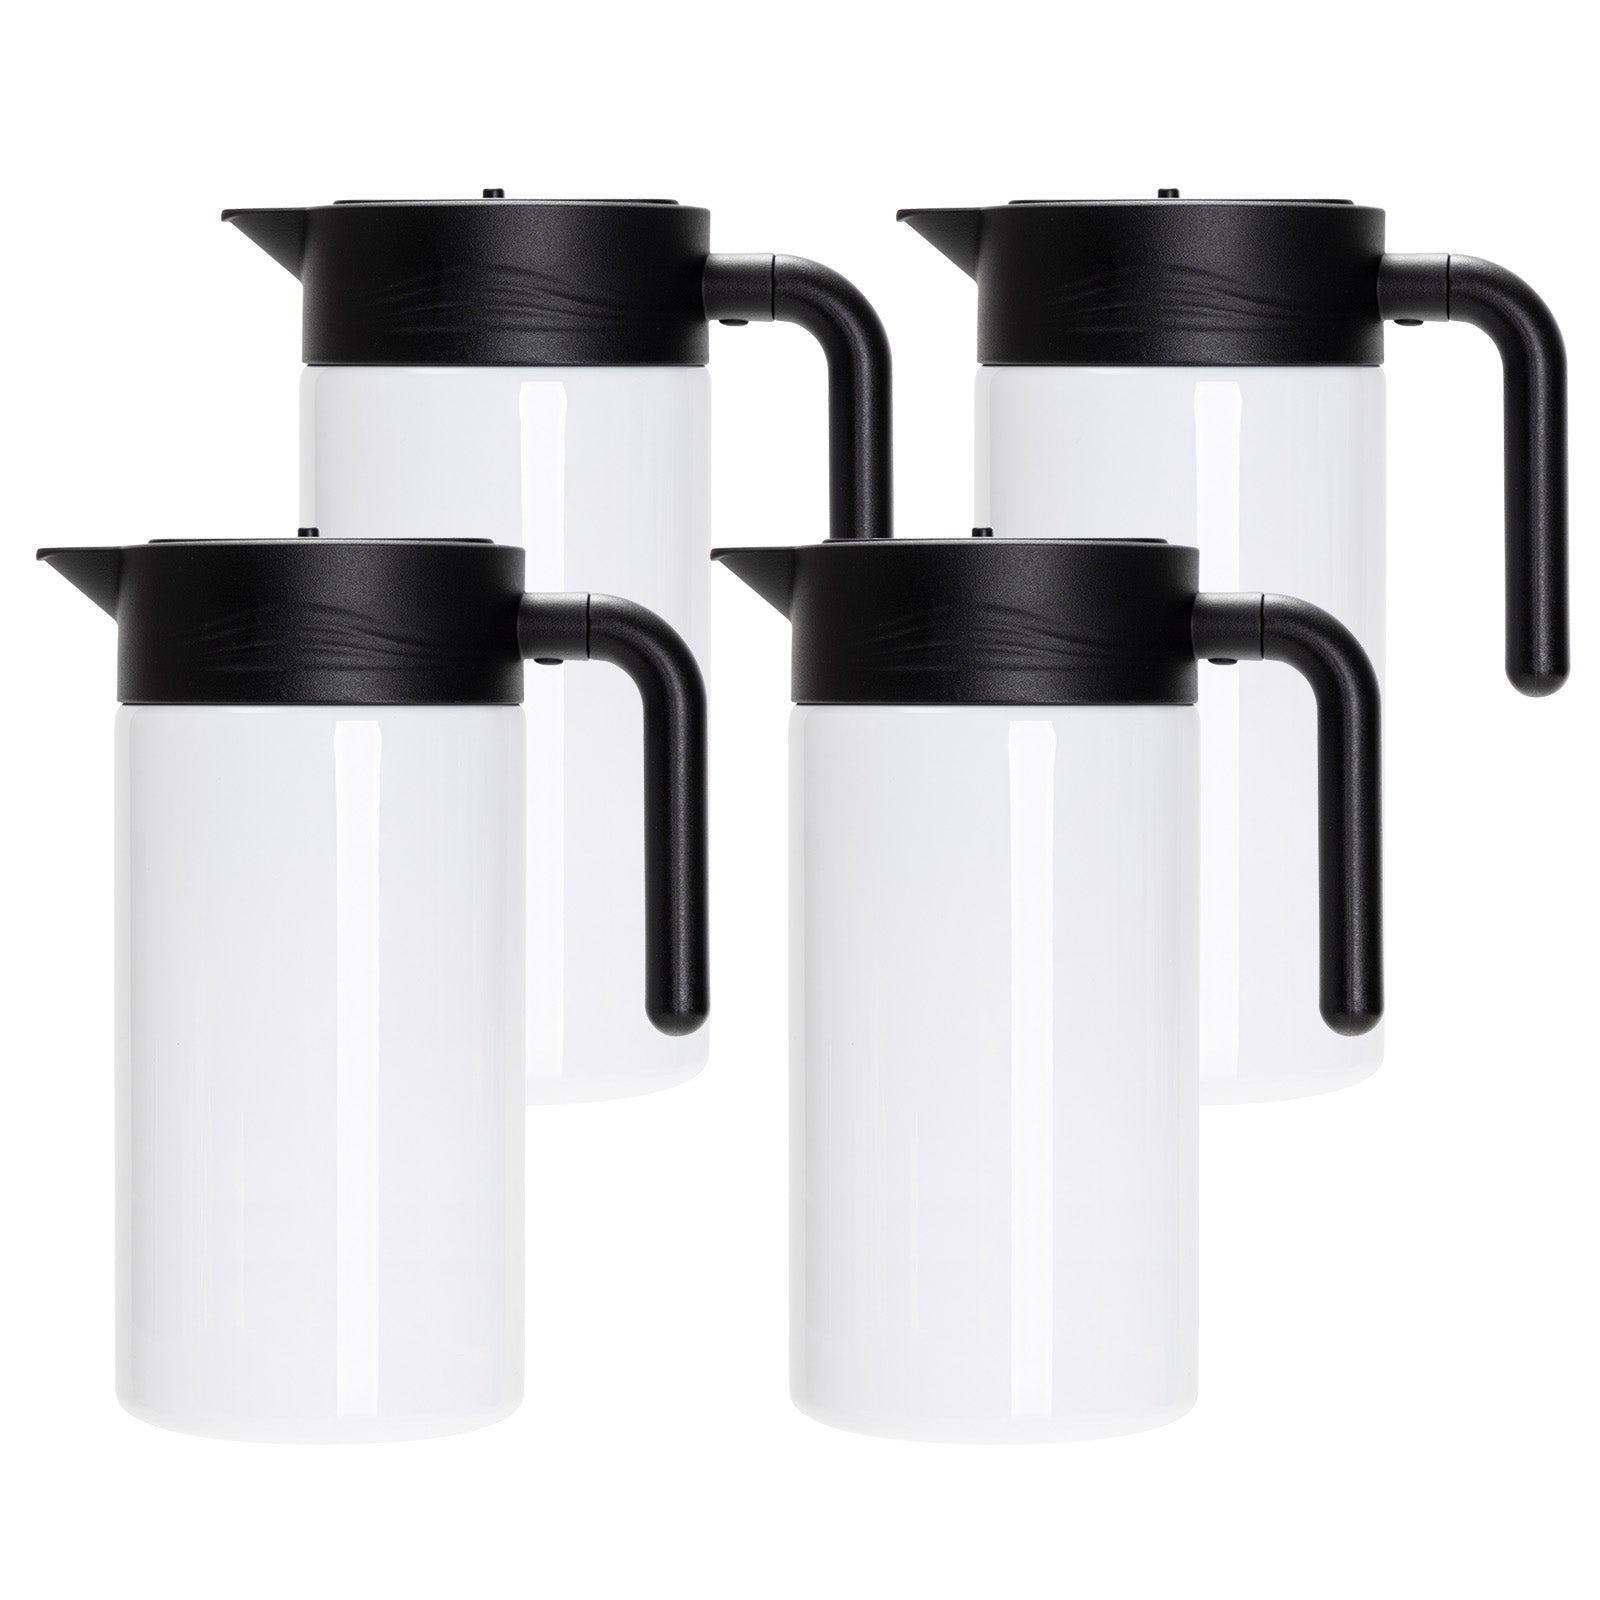 Plastic Carafes with White Caps (4 Pack) - 50 oz Carafe - Leak